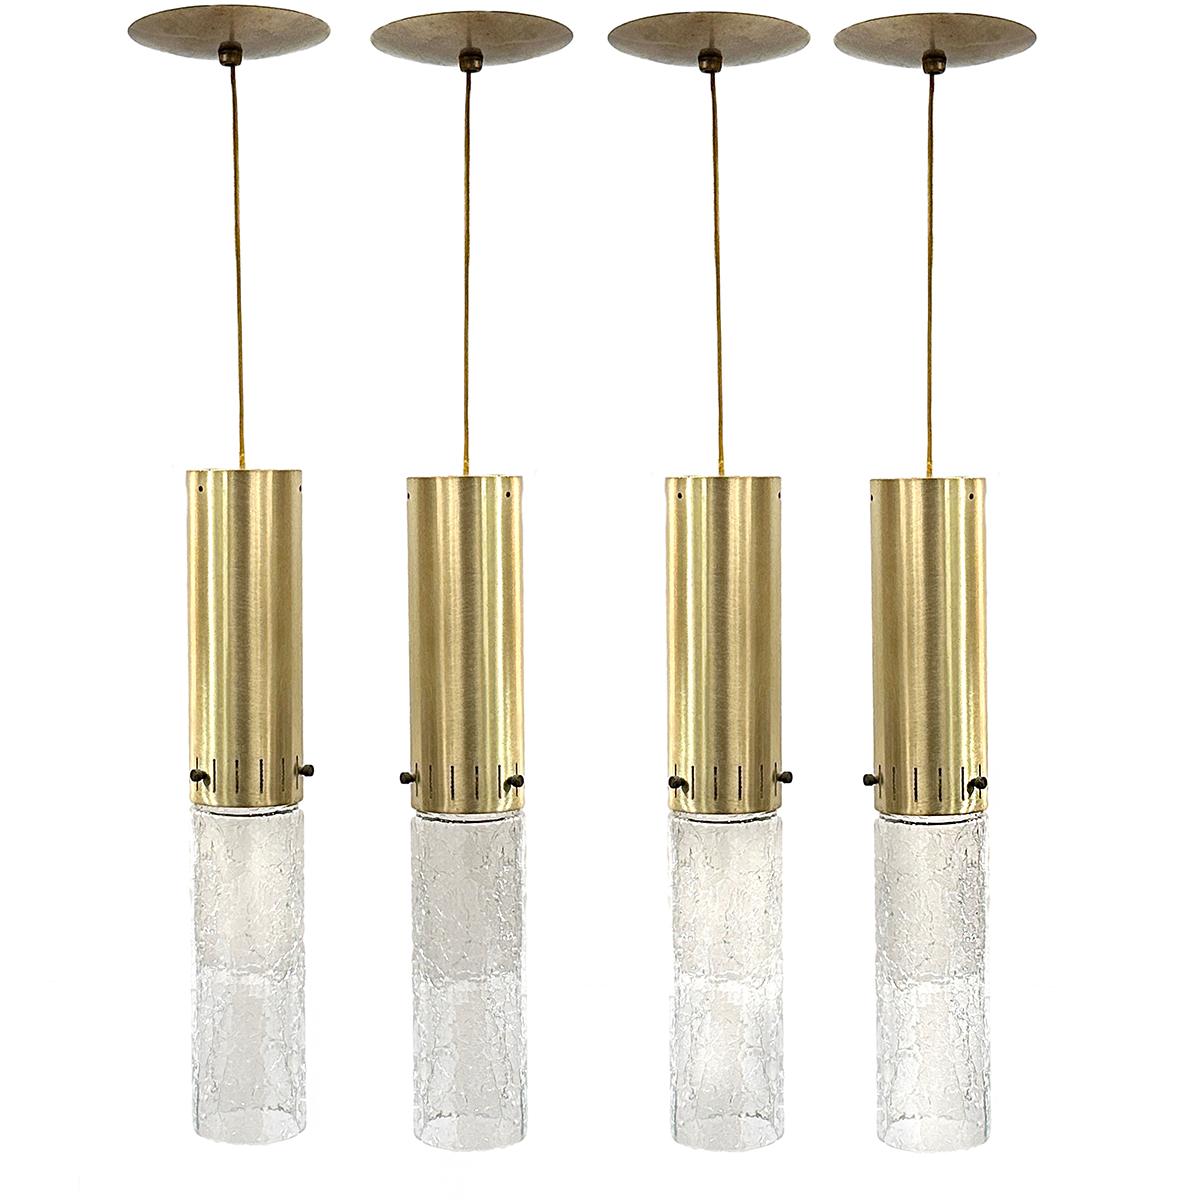 Set of 4, circa 1960's crackled glass Italian light fixtures.

Measurements:
Drop: 33